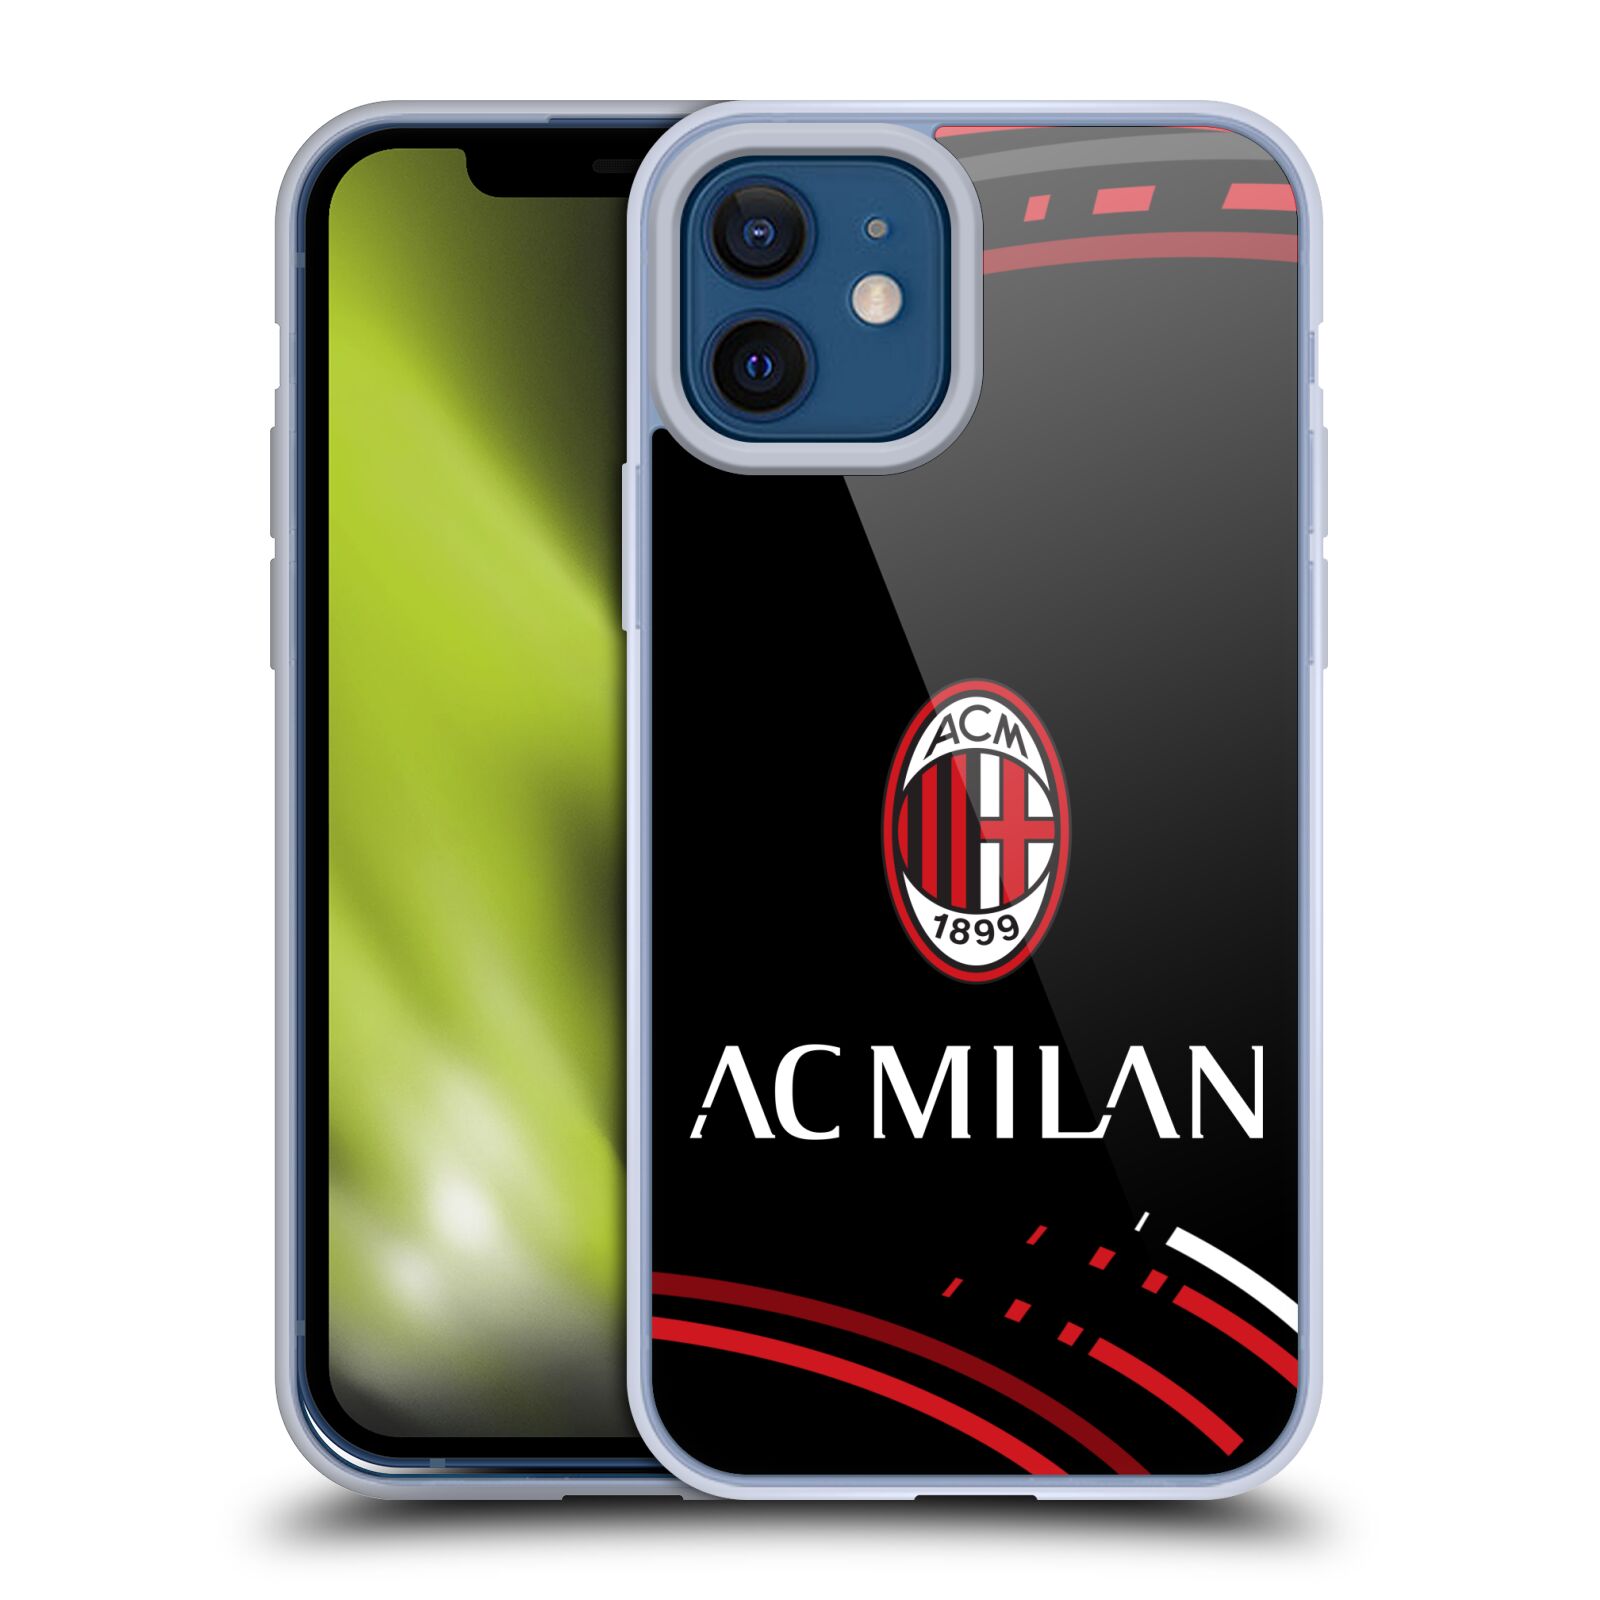 iPhone SE 2020 iPhone 8 Head Case Designs Licenza Ufficiale AC Milan Rosso E Nero Stemma Cover Ibrida Compatibile con Apple iPhone 7 